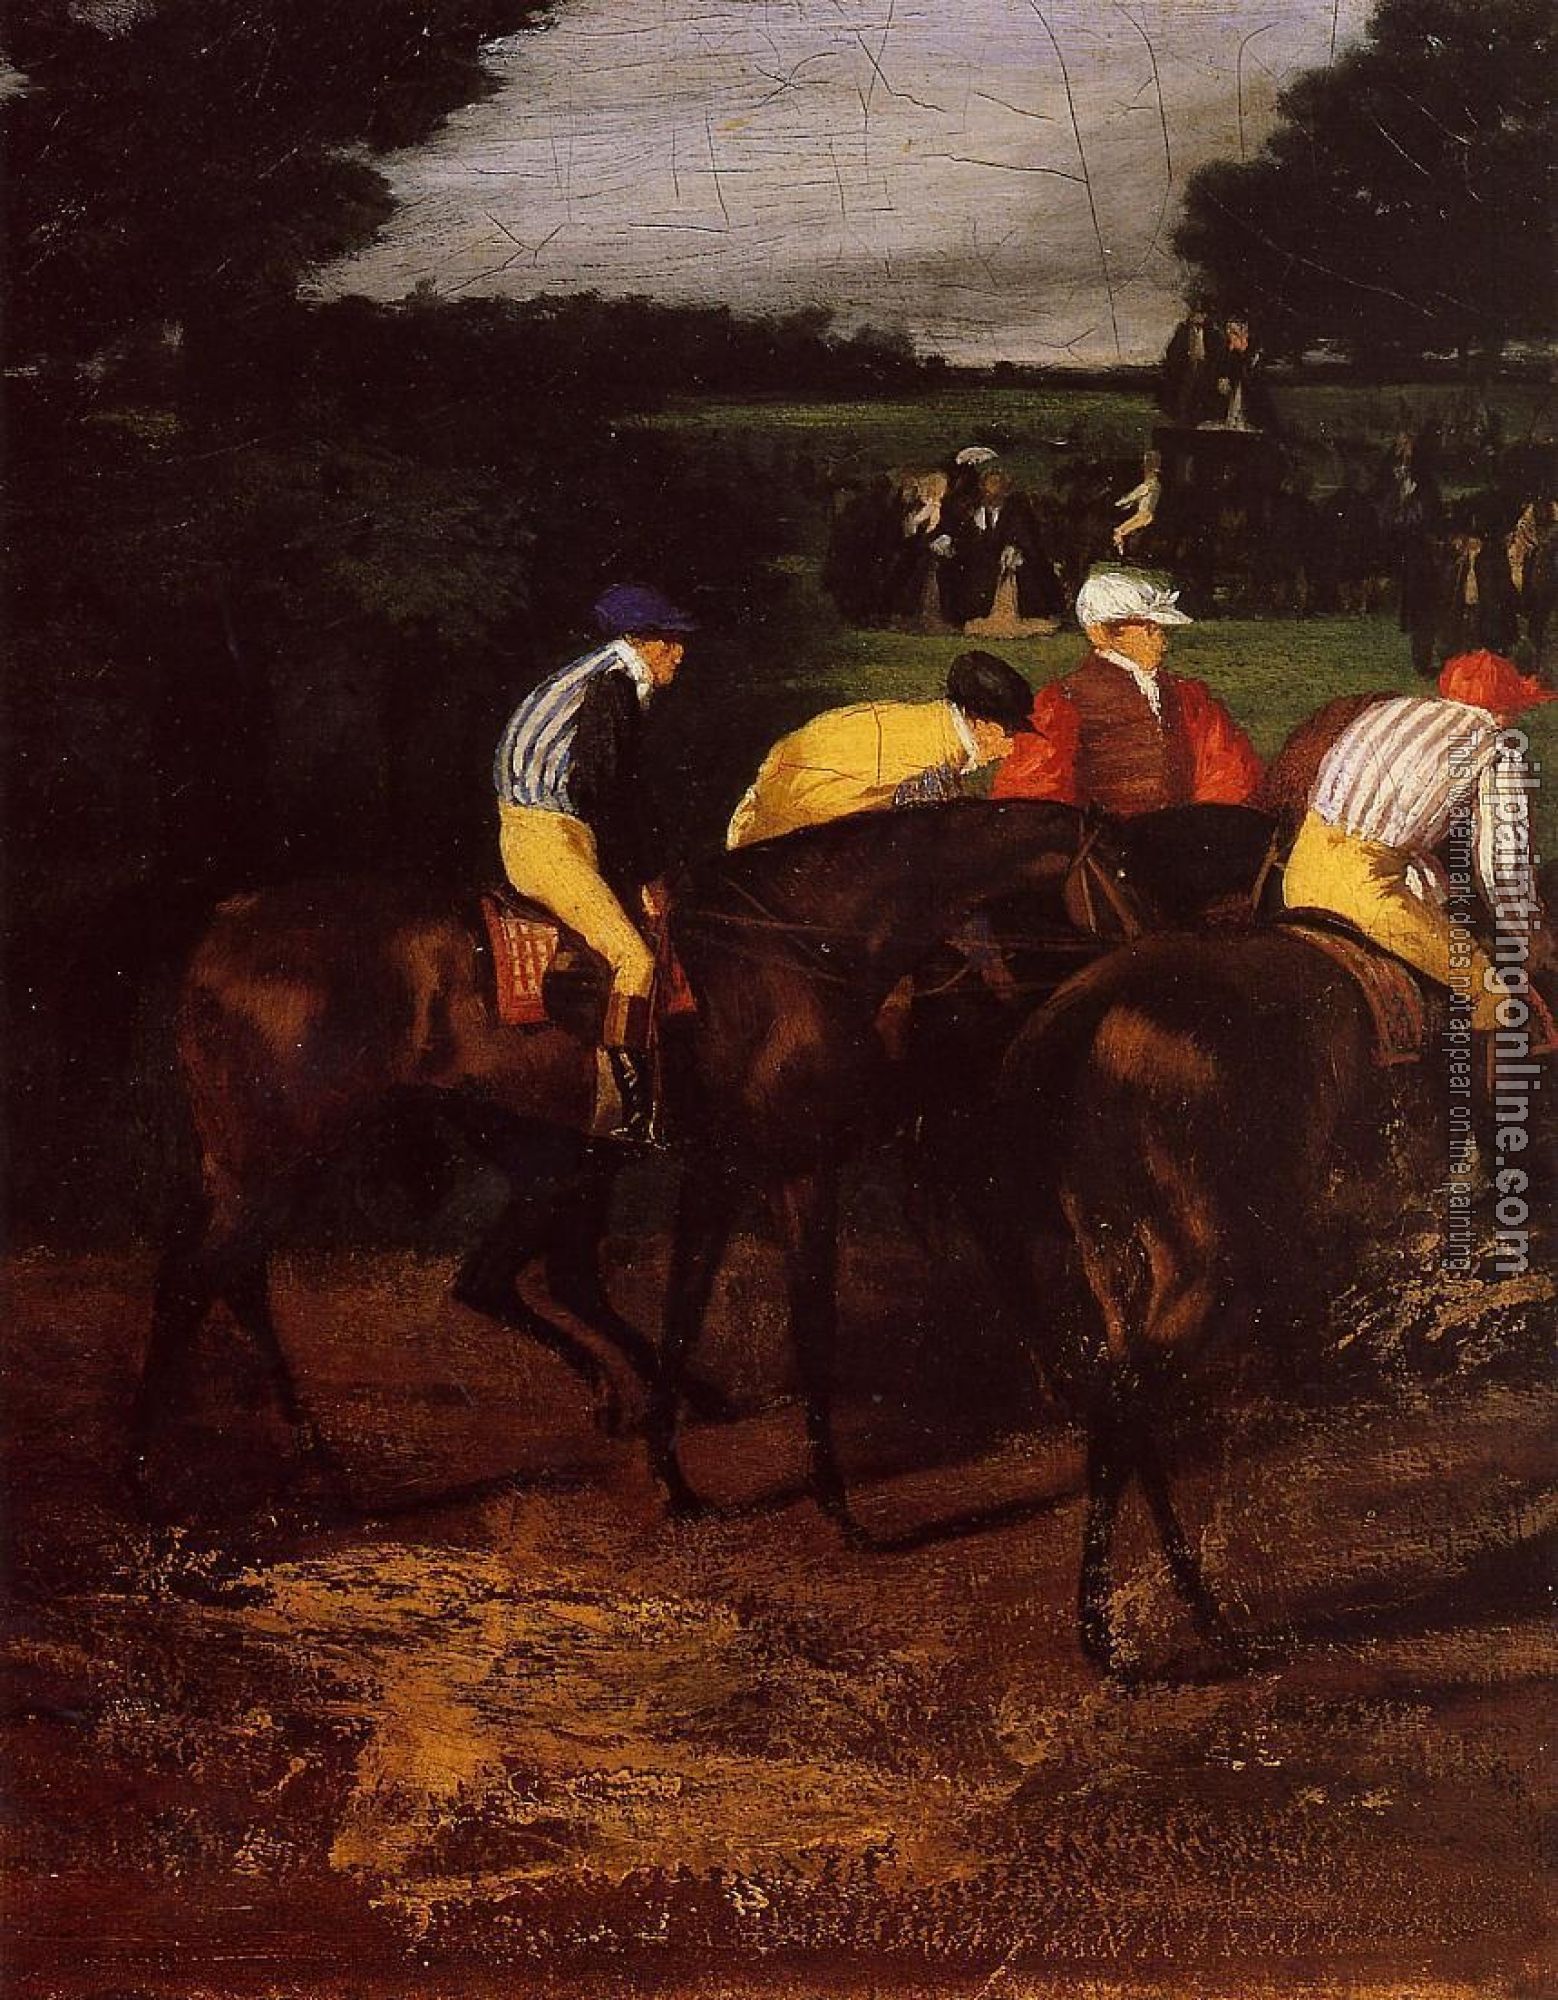 Degas, Edgar - Jockeys at Epsom